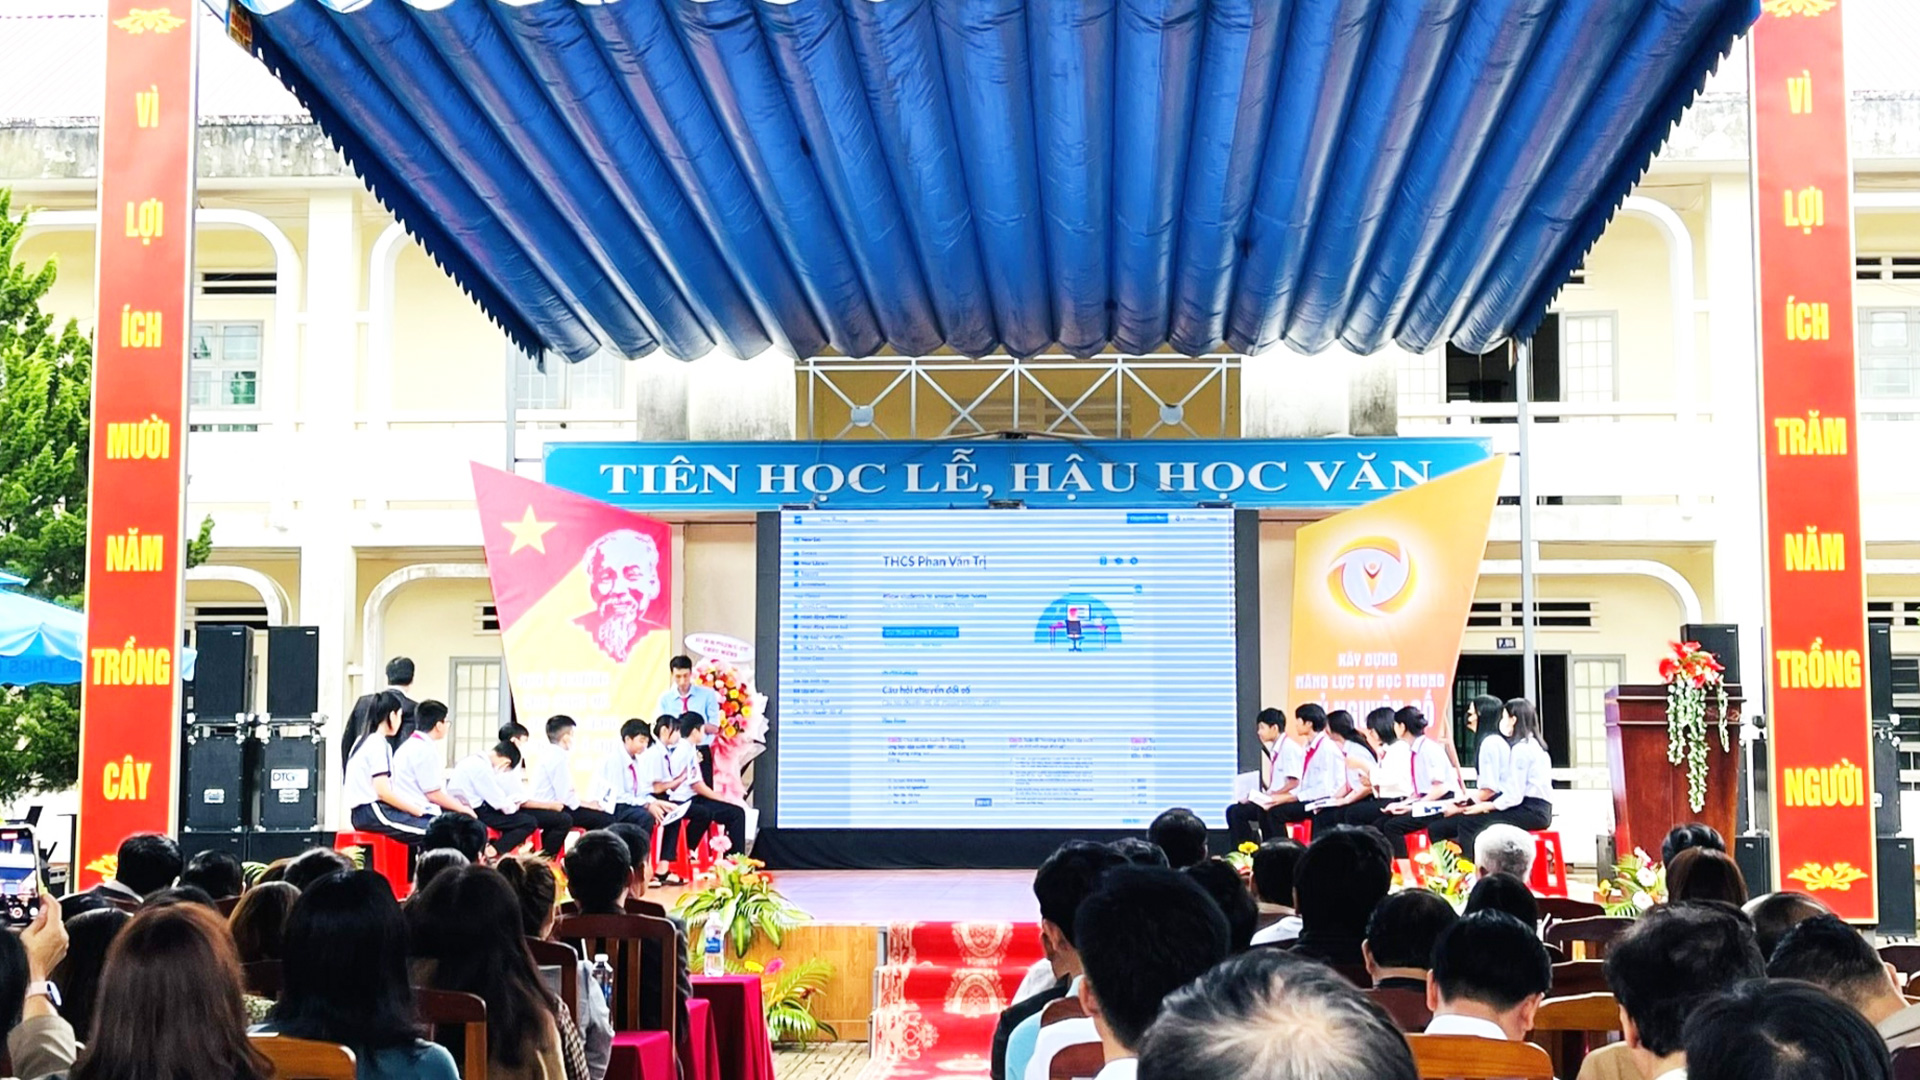 Các em học sinh trường THCS Phan Văn Trị tham gia phát động hưởng ứng tuần lễ học tập suất đời